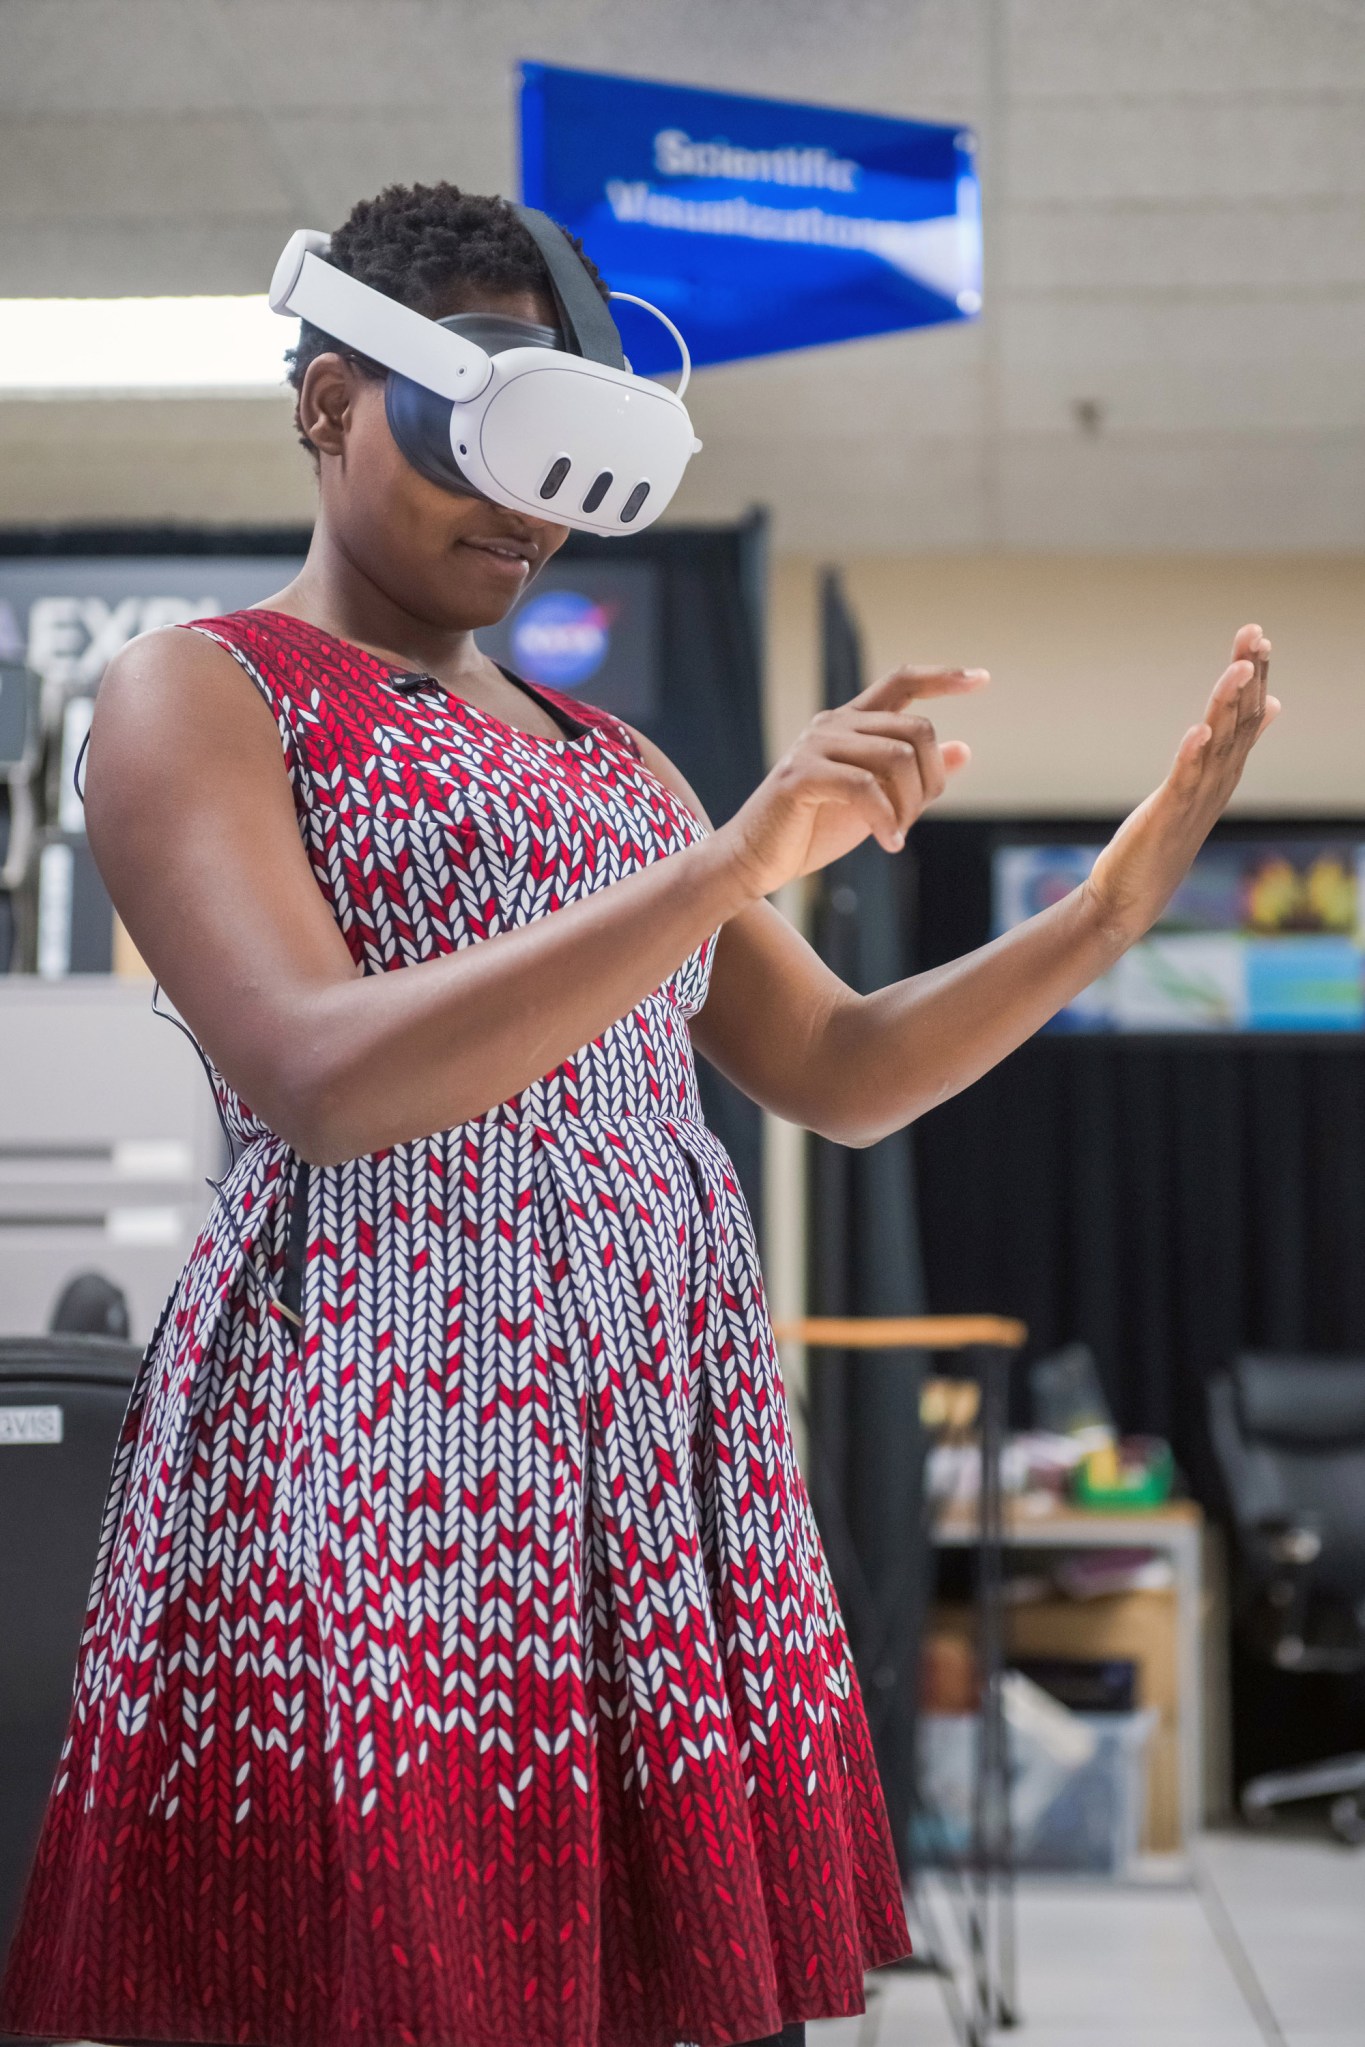 Nelly Cheboi在测试虚拟现实演示时集中精力。她戴着虚拟现实耳机，穿着红白相间的连衣裙。她的手看起来就像是在按下隐形平板电脑上的按钮。